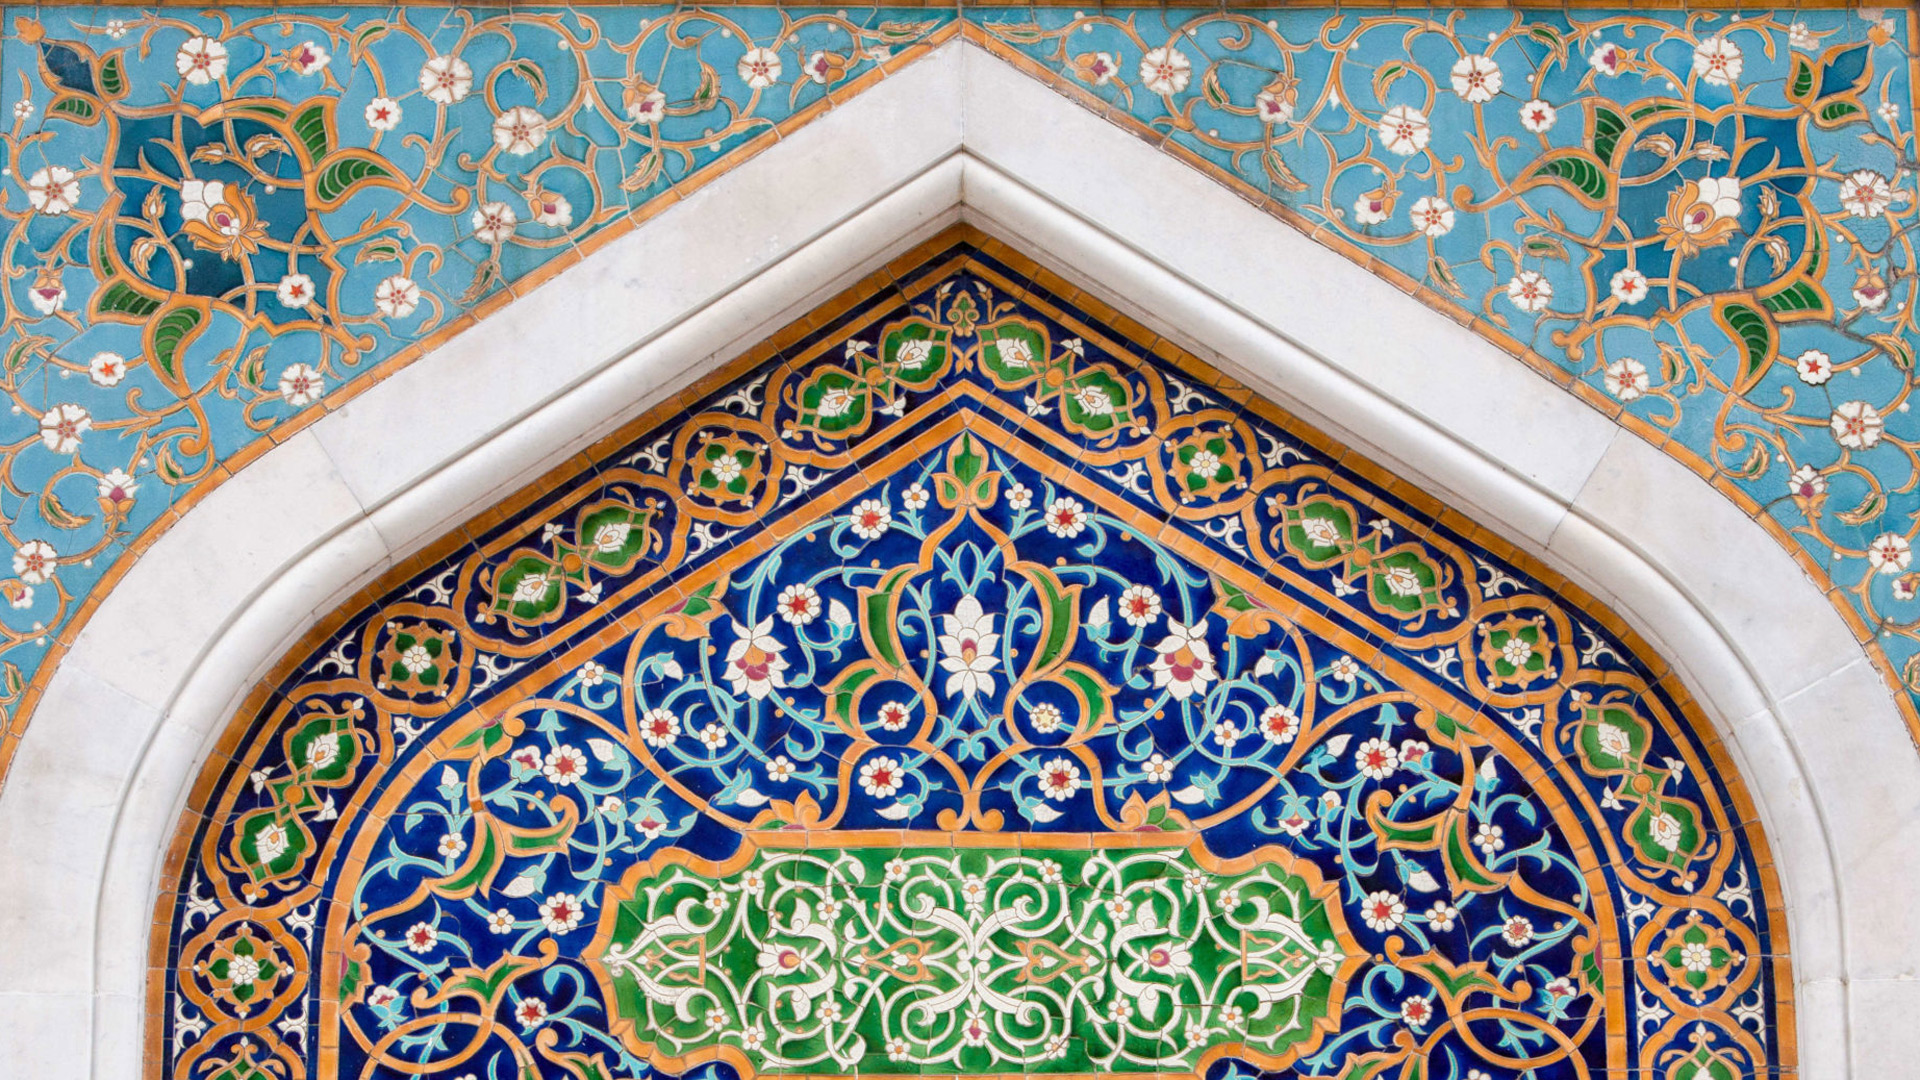 Central Asia architecture